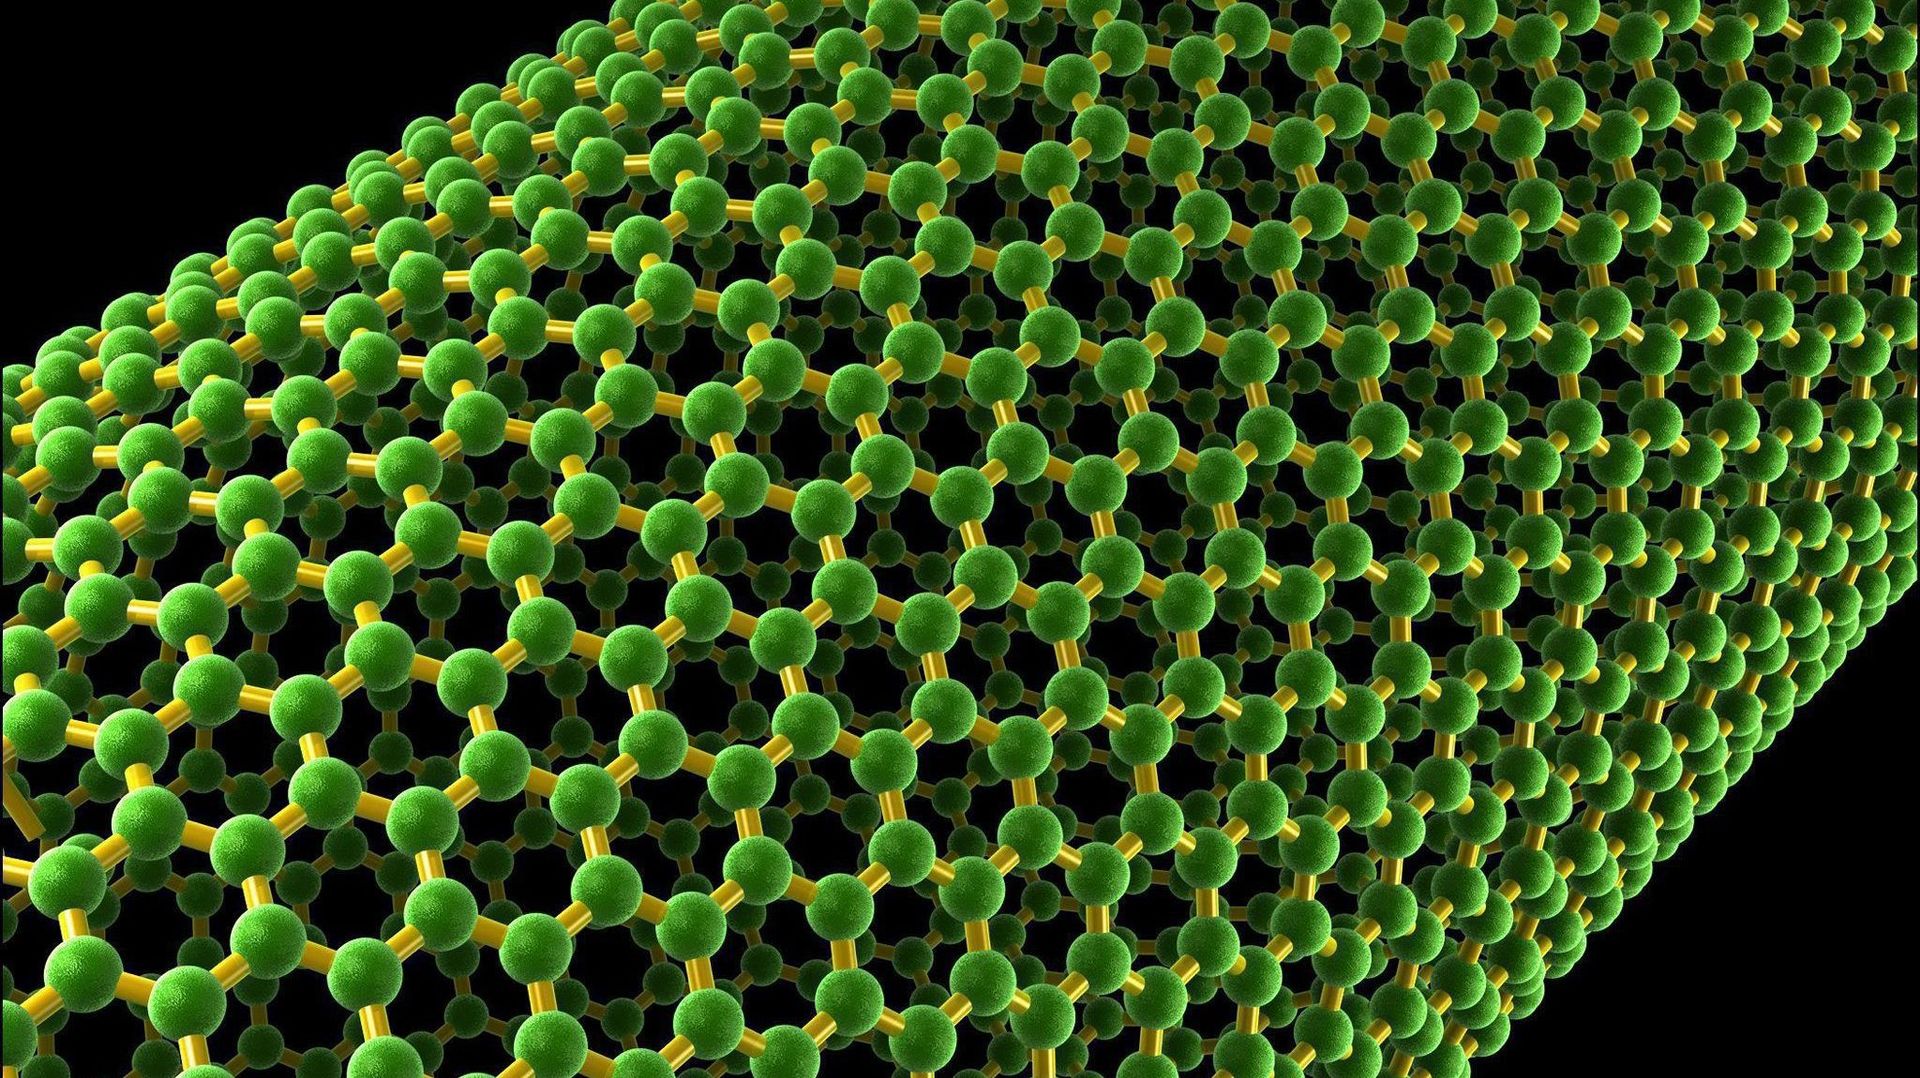 Nanocyl, fleuron technologique wallon, n'est toujours pas rentable quinze ans après sa création